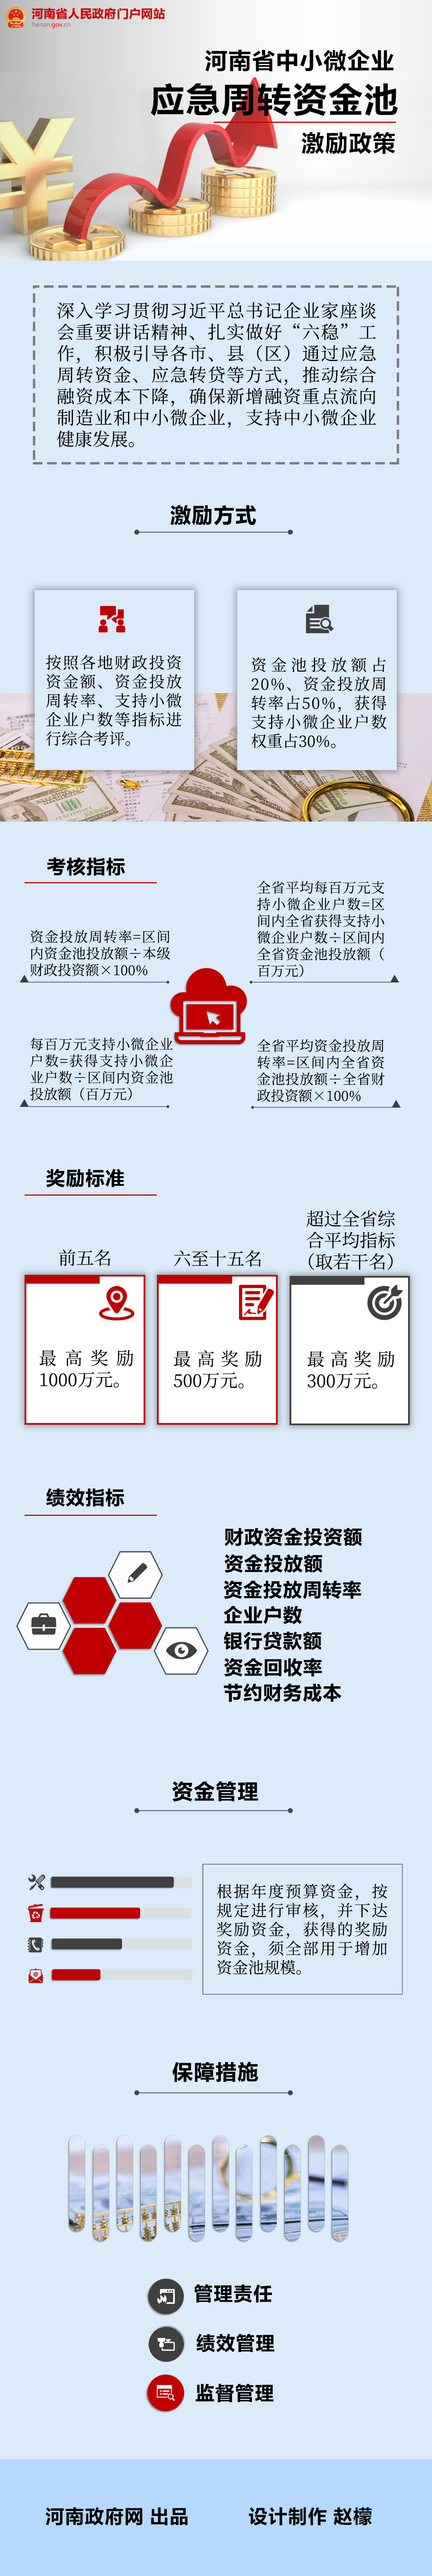 图解：河南省中小微企业应急周转资金池激励政策